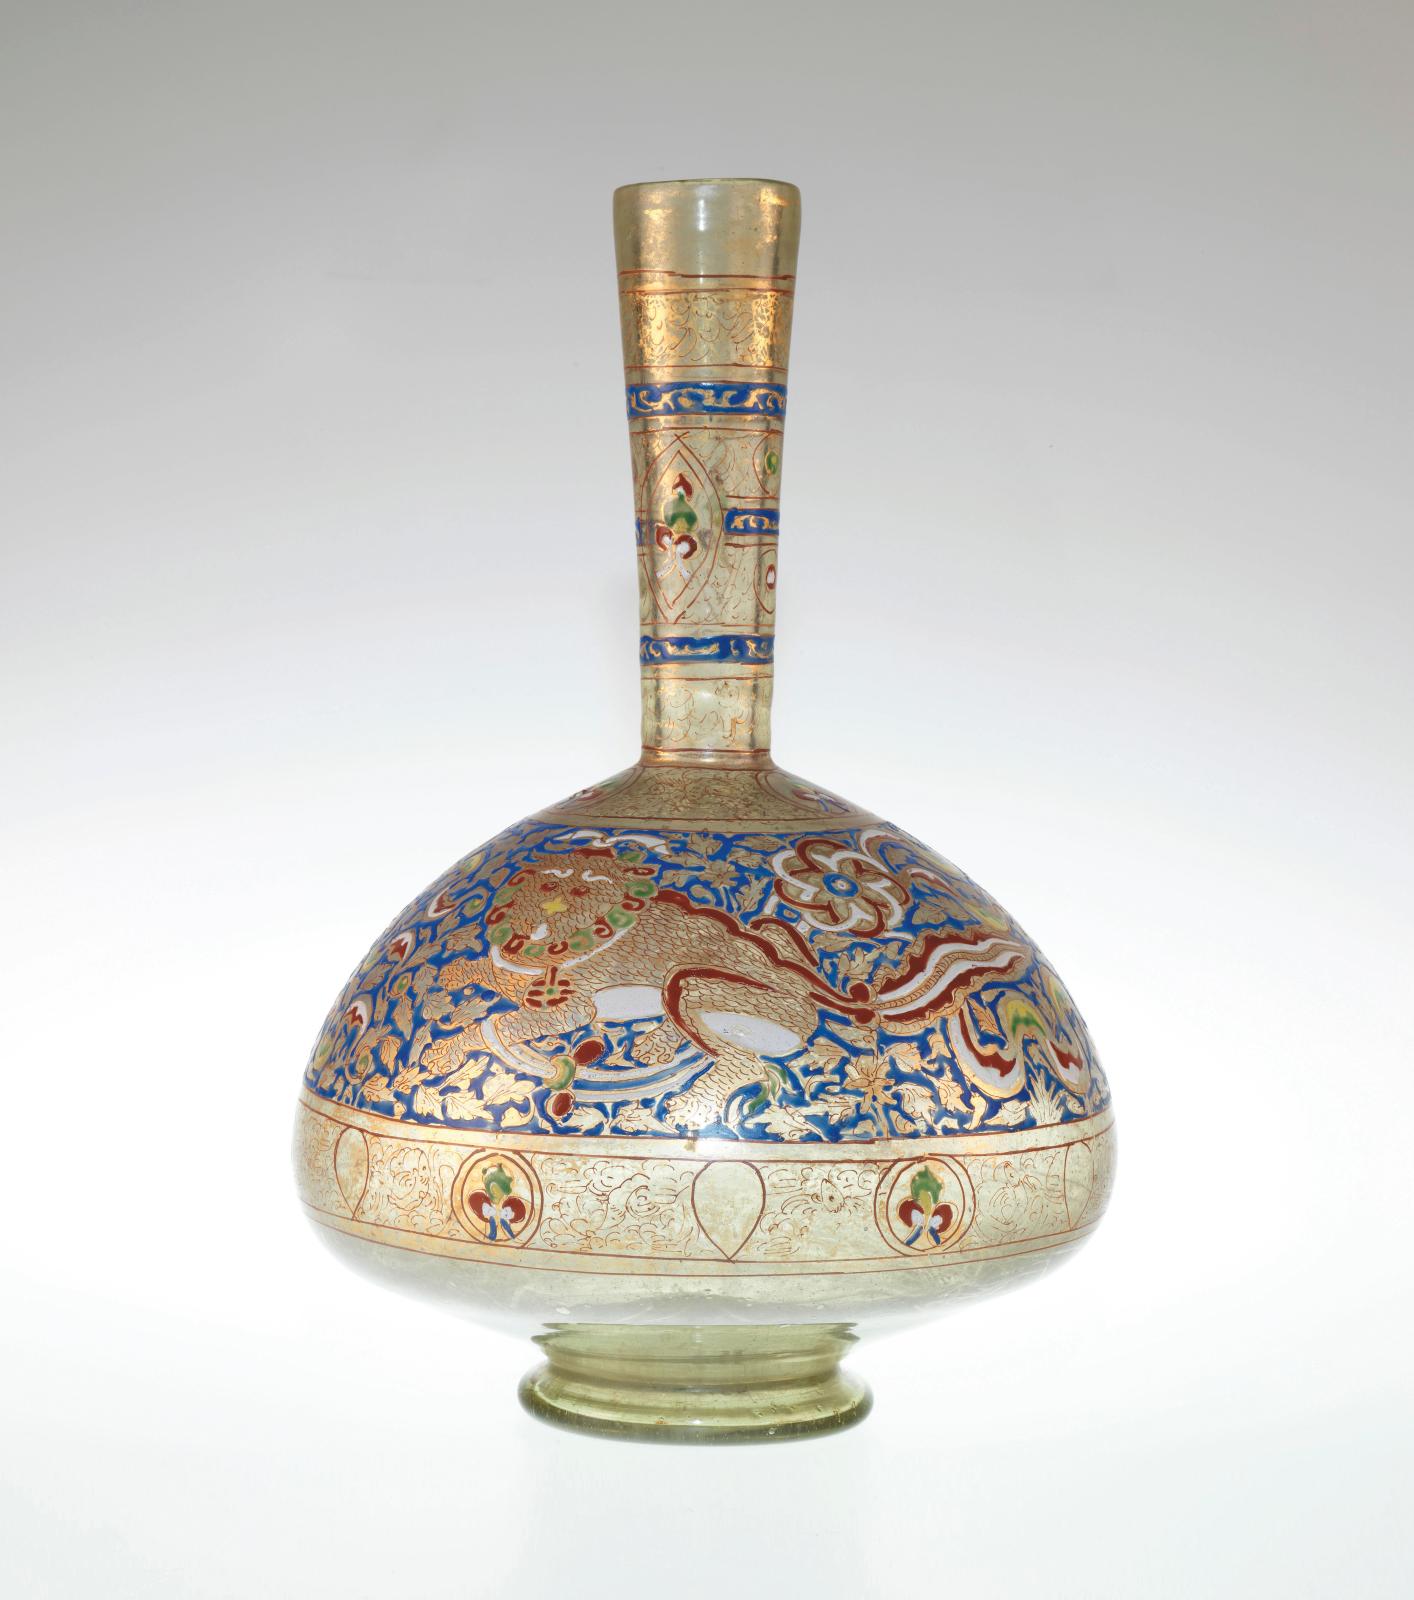 Égypte ou Syrie, XIVe siècle, période mamelouk, bouteille en verre à décoration dorée et émaillée, h. 39, diam. 11,50 cm (base), Fondation